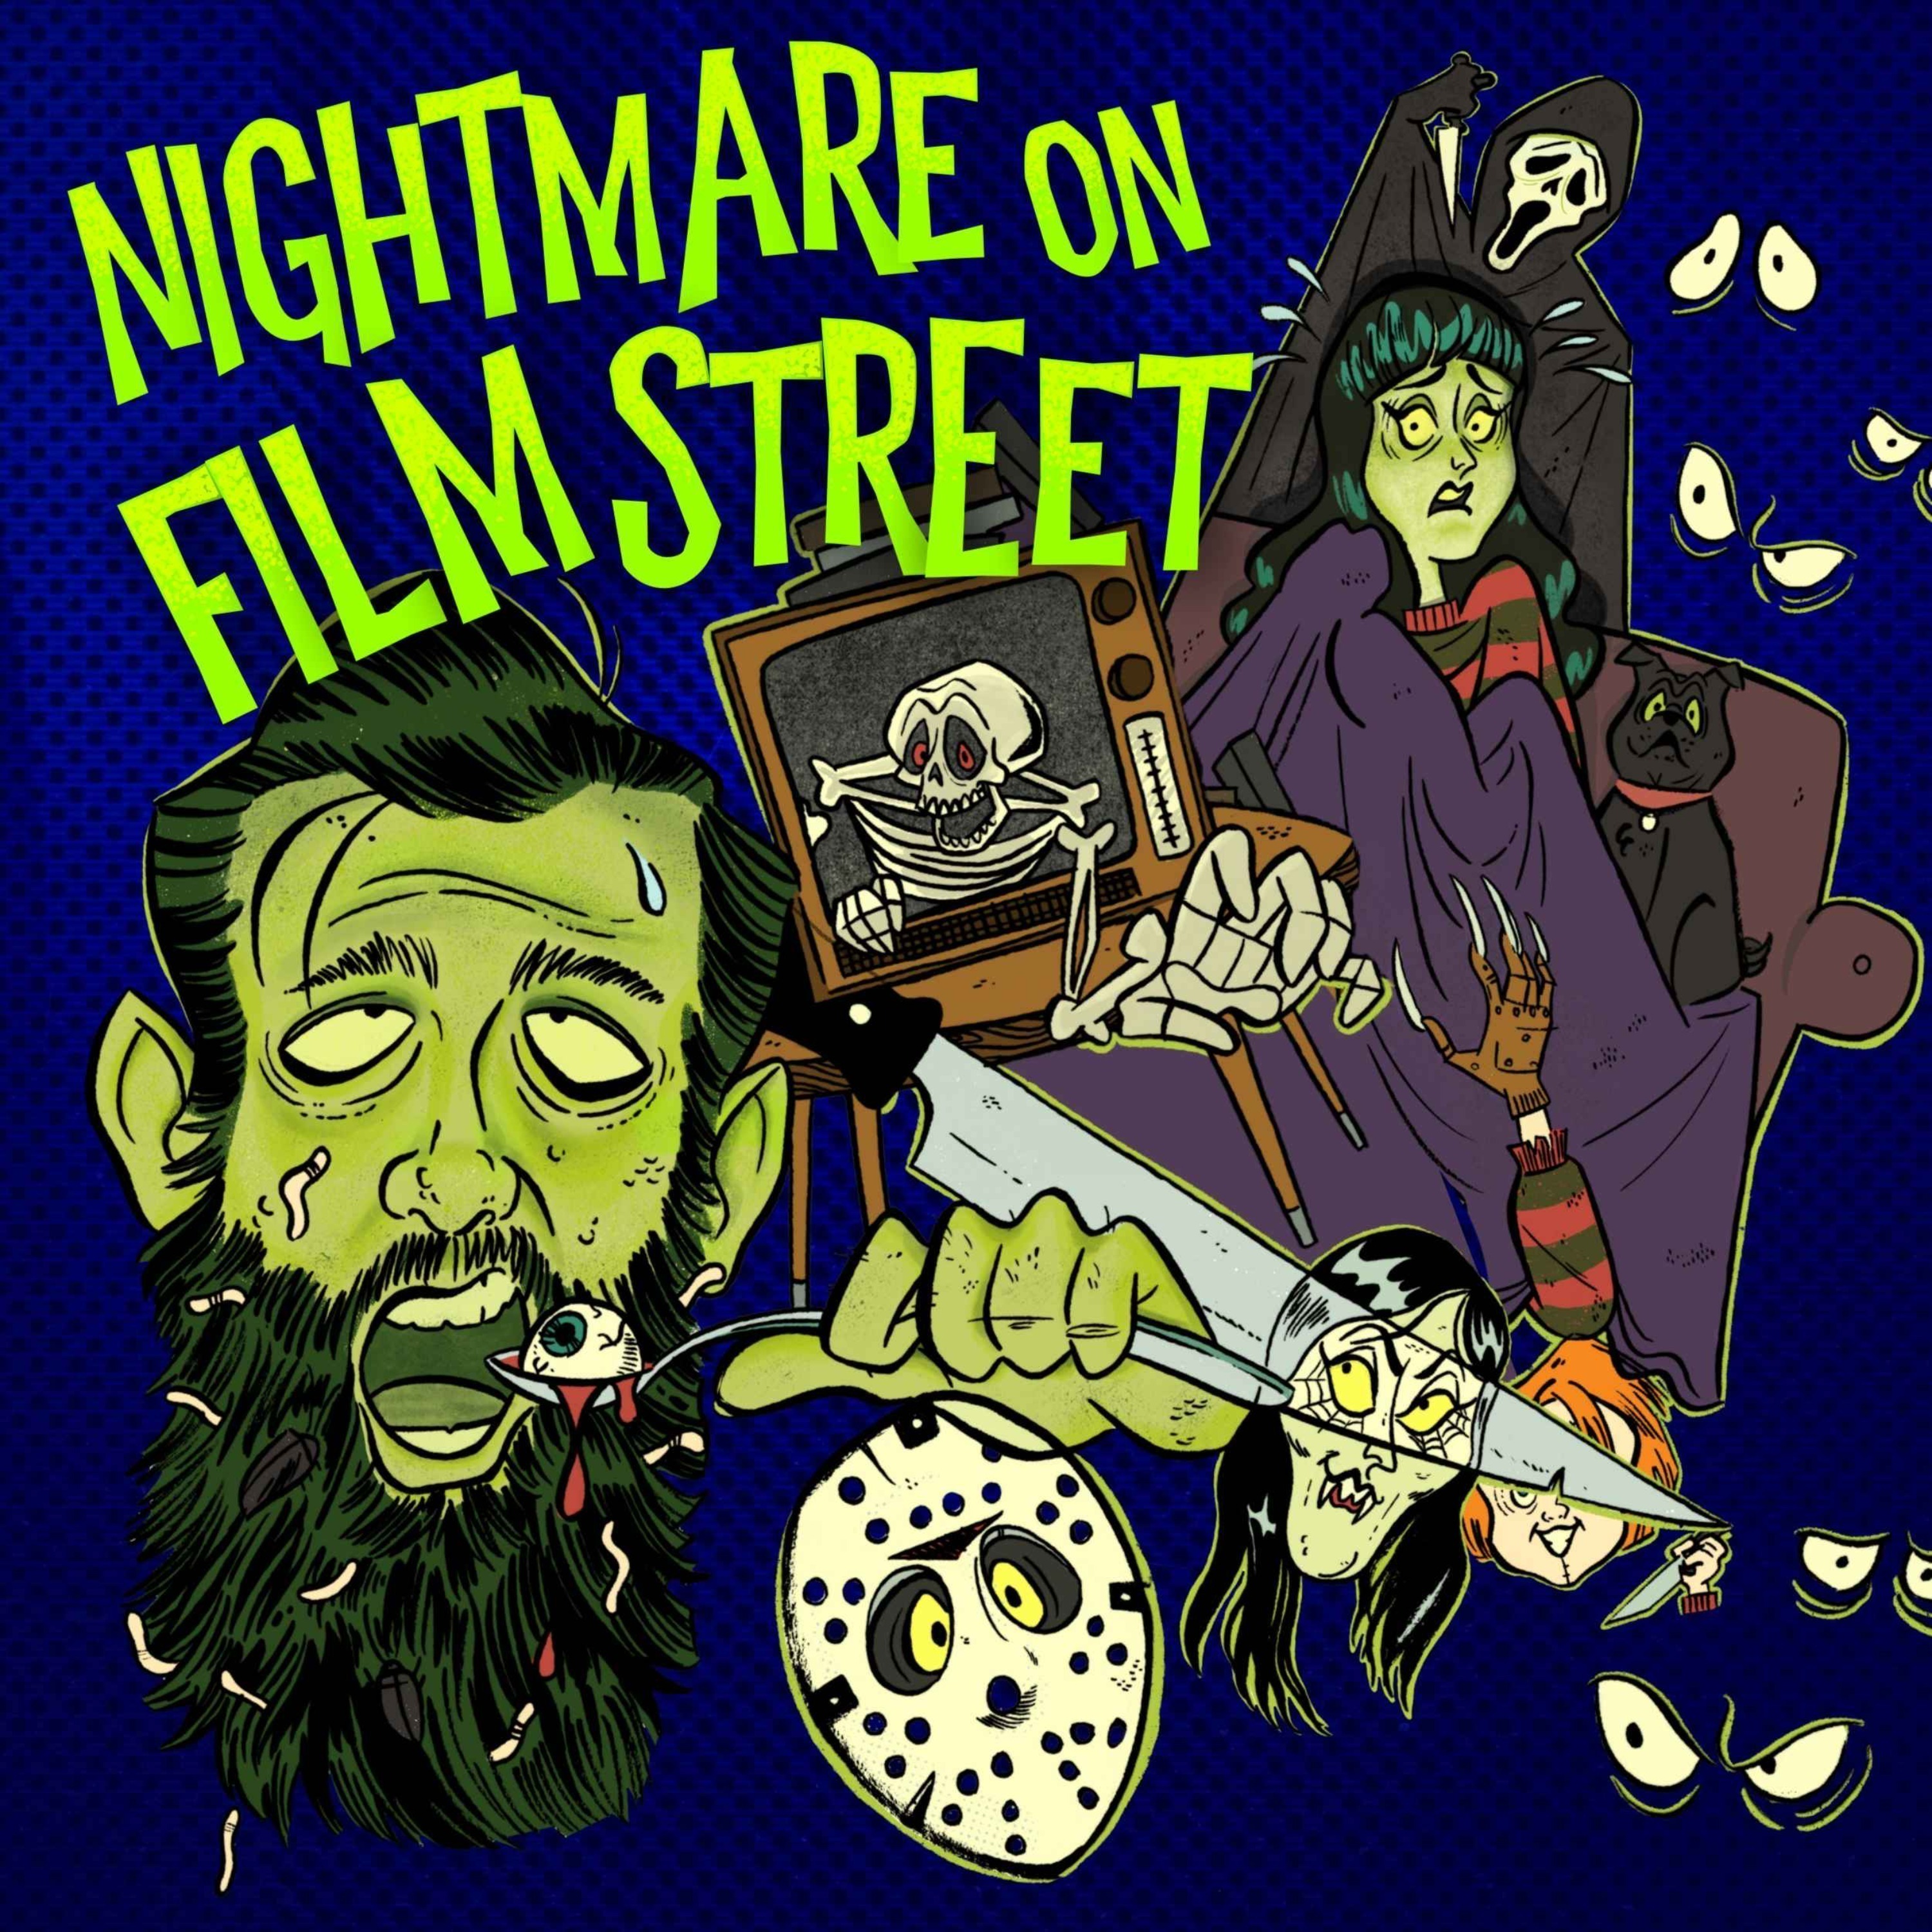 Nightmare on Film Street